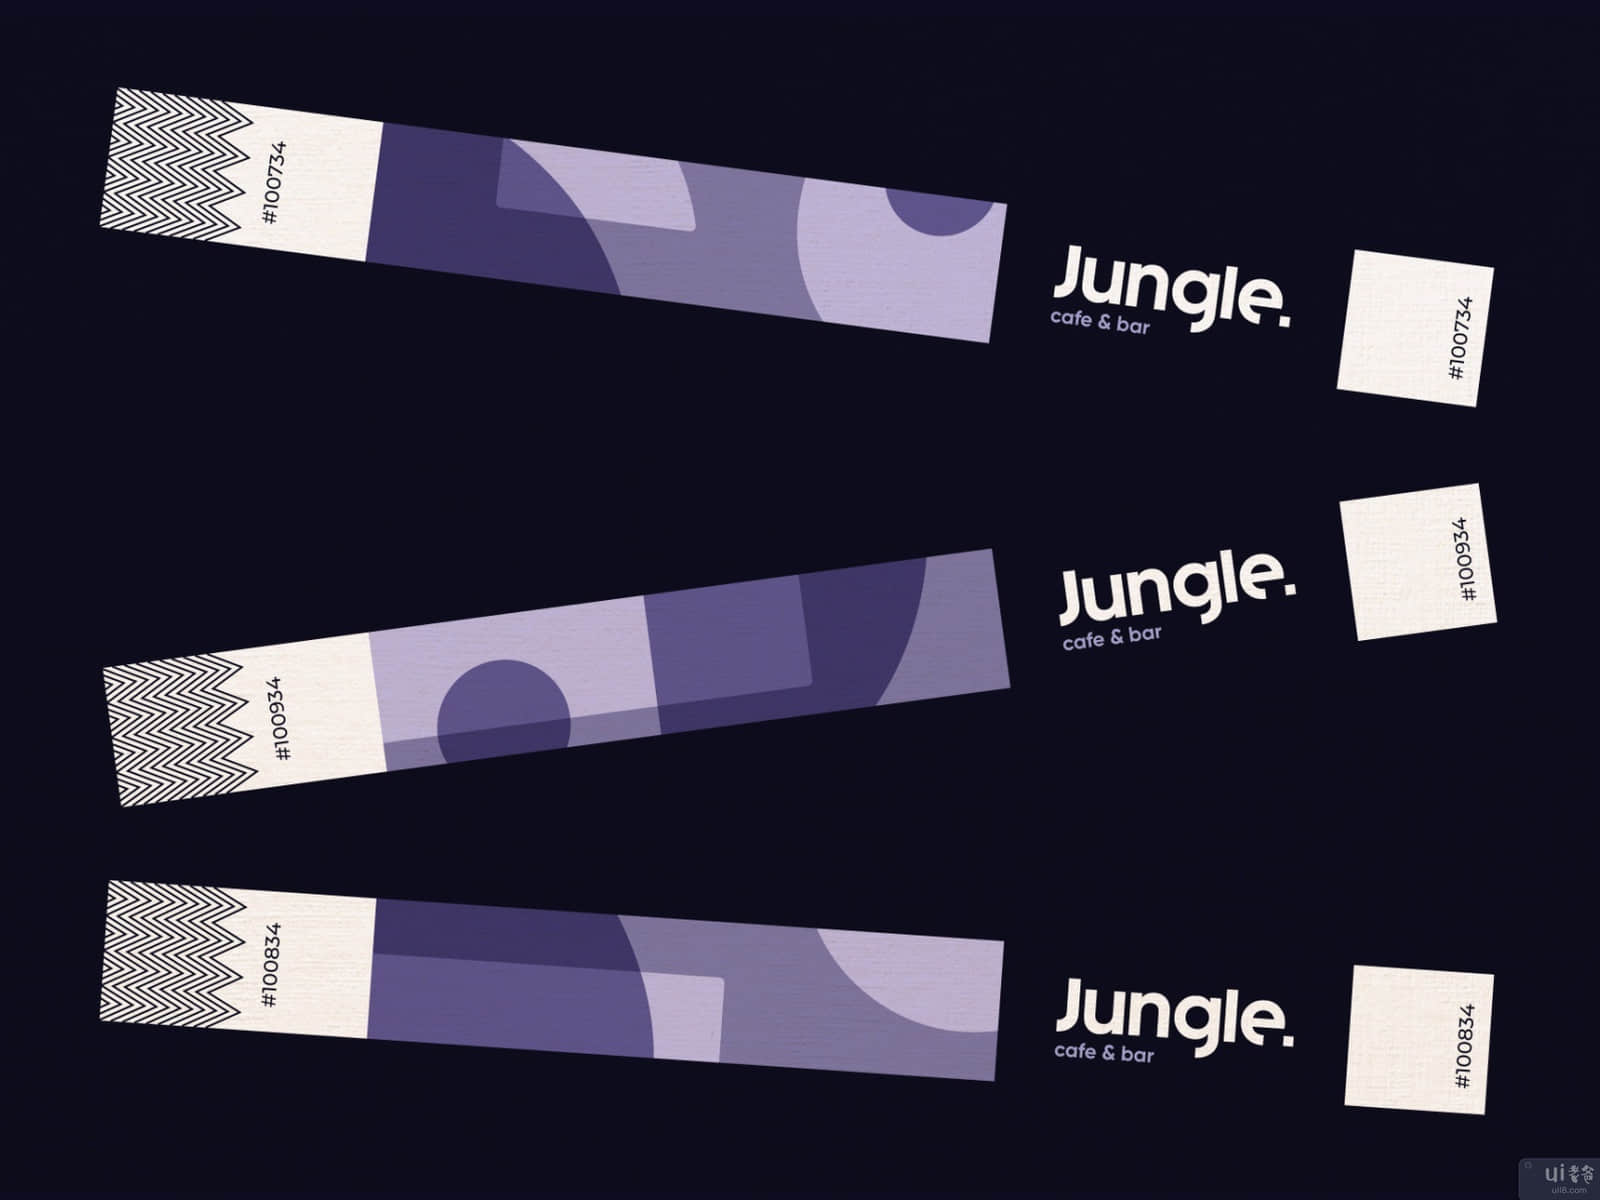 丛林咖啡和酒吧 - 门票(Jungle Cafe & Bar - Ticket)插图